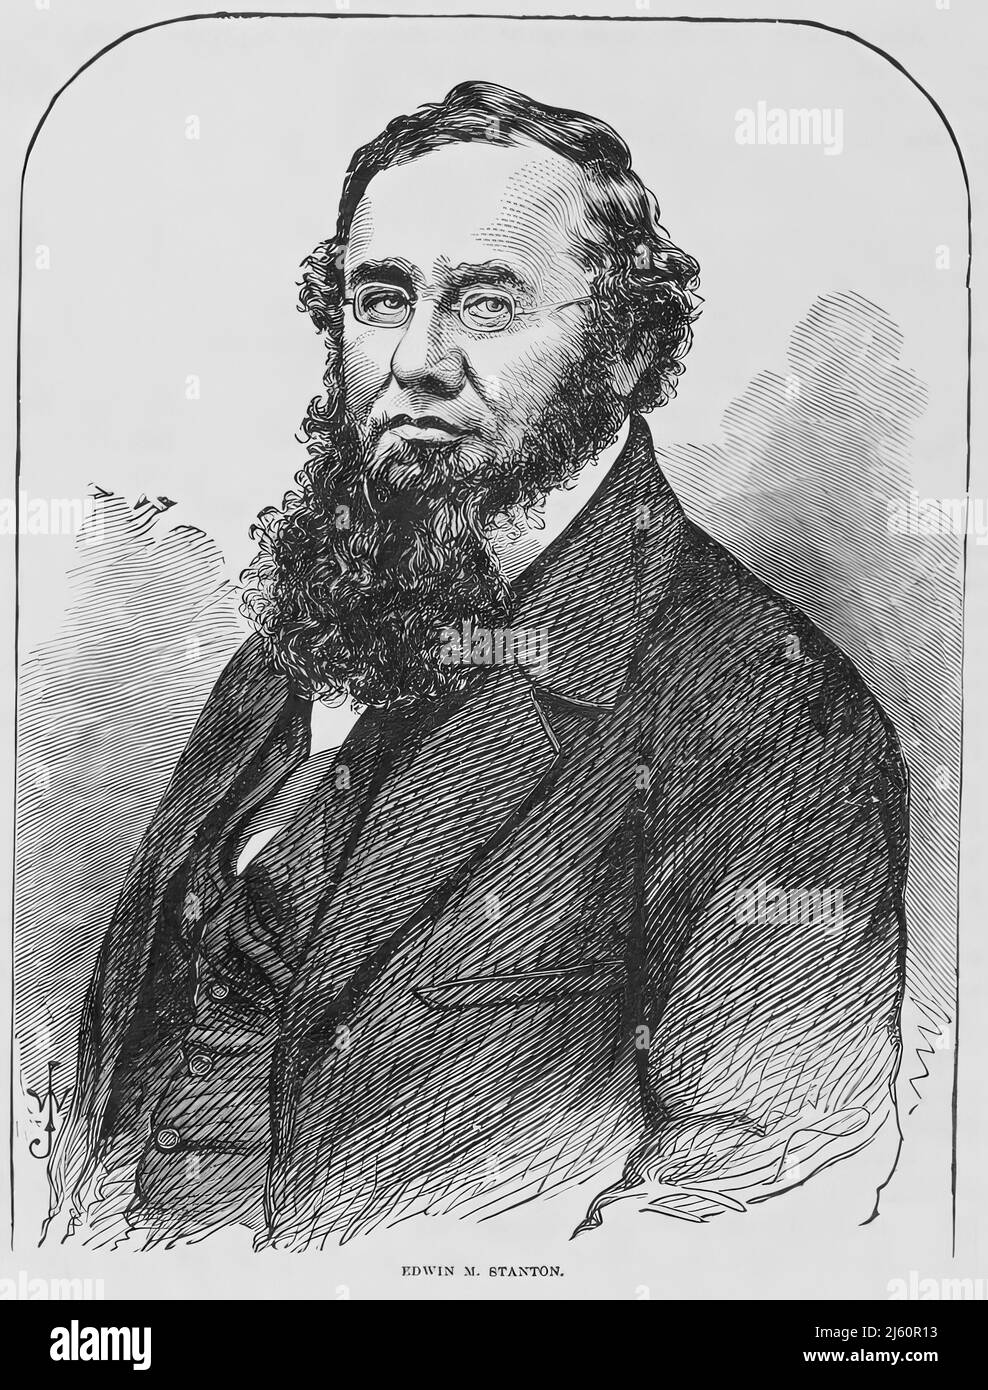 Portrait d'Edwin McMasters Stanton, secrétaire américain à la guerre pendant la guerre de Sécession. illustration du siècle 19th Banque D'Images